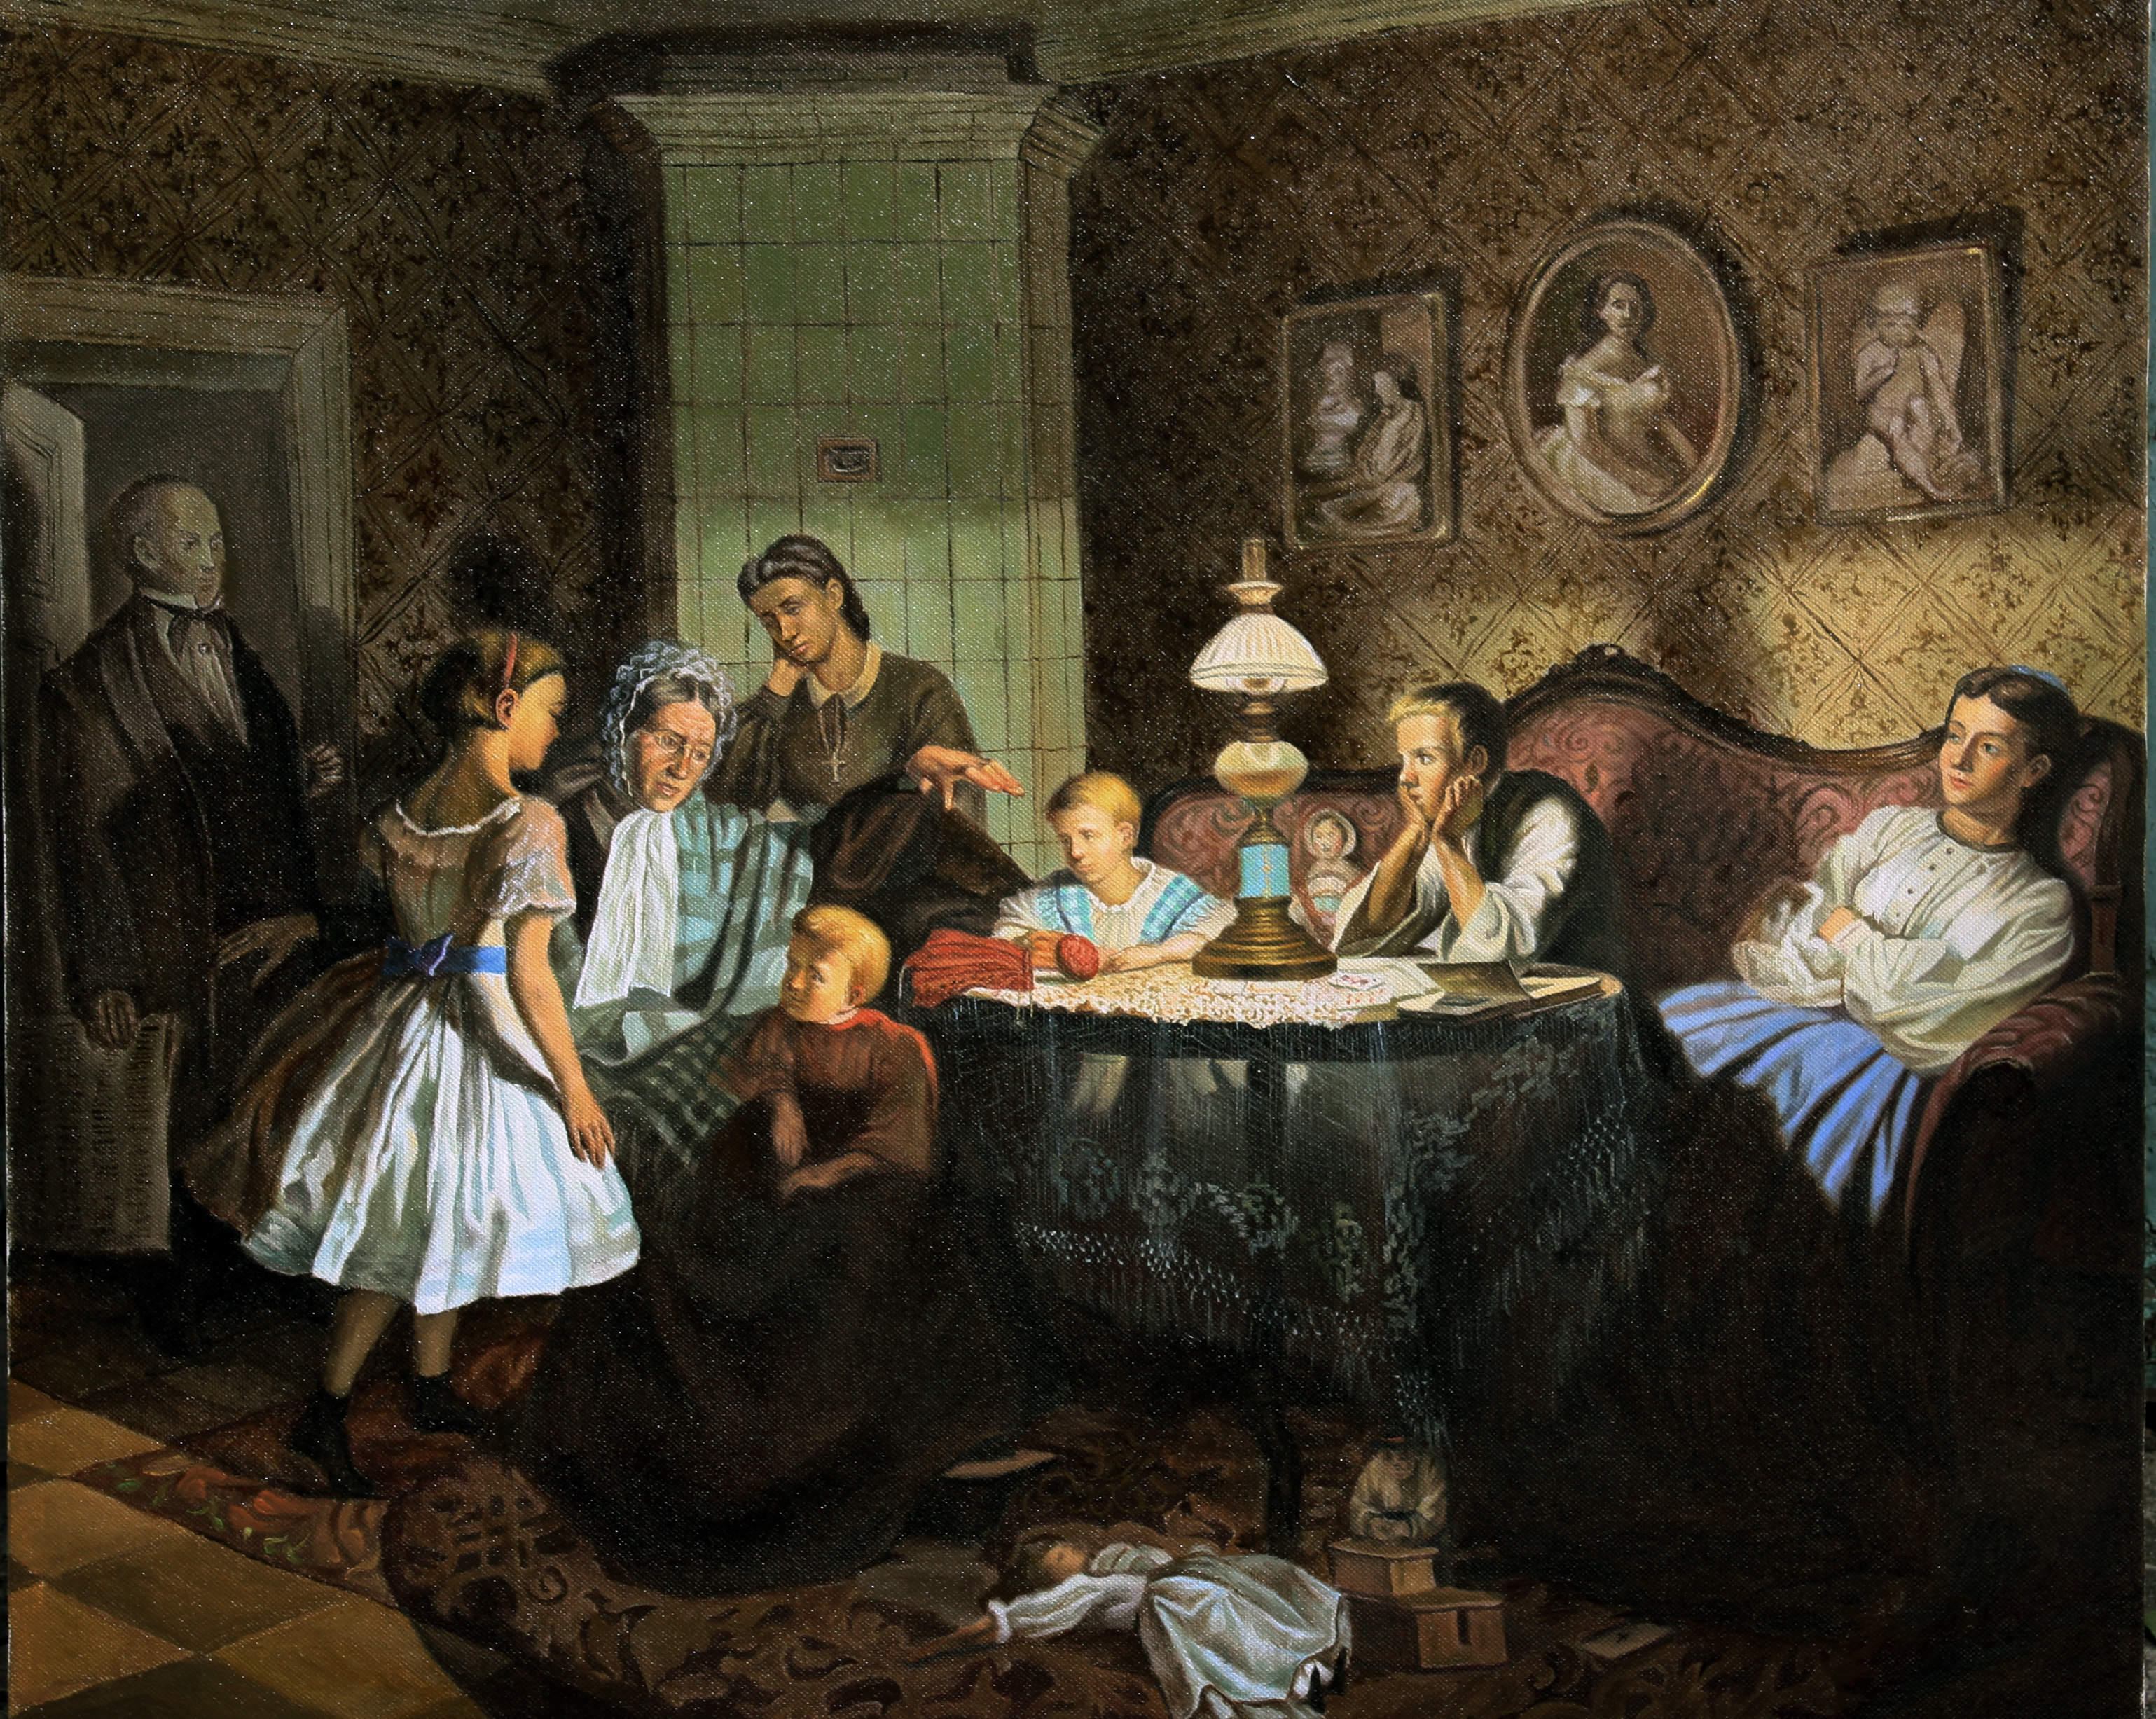 Вечер 19 века. Красносельский бабушкины сказки картина.